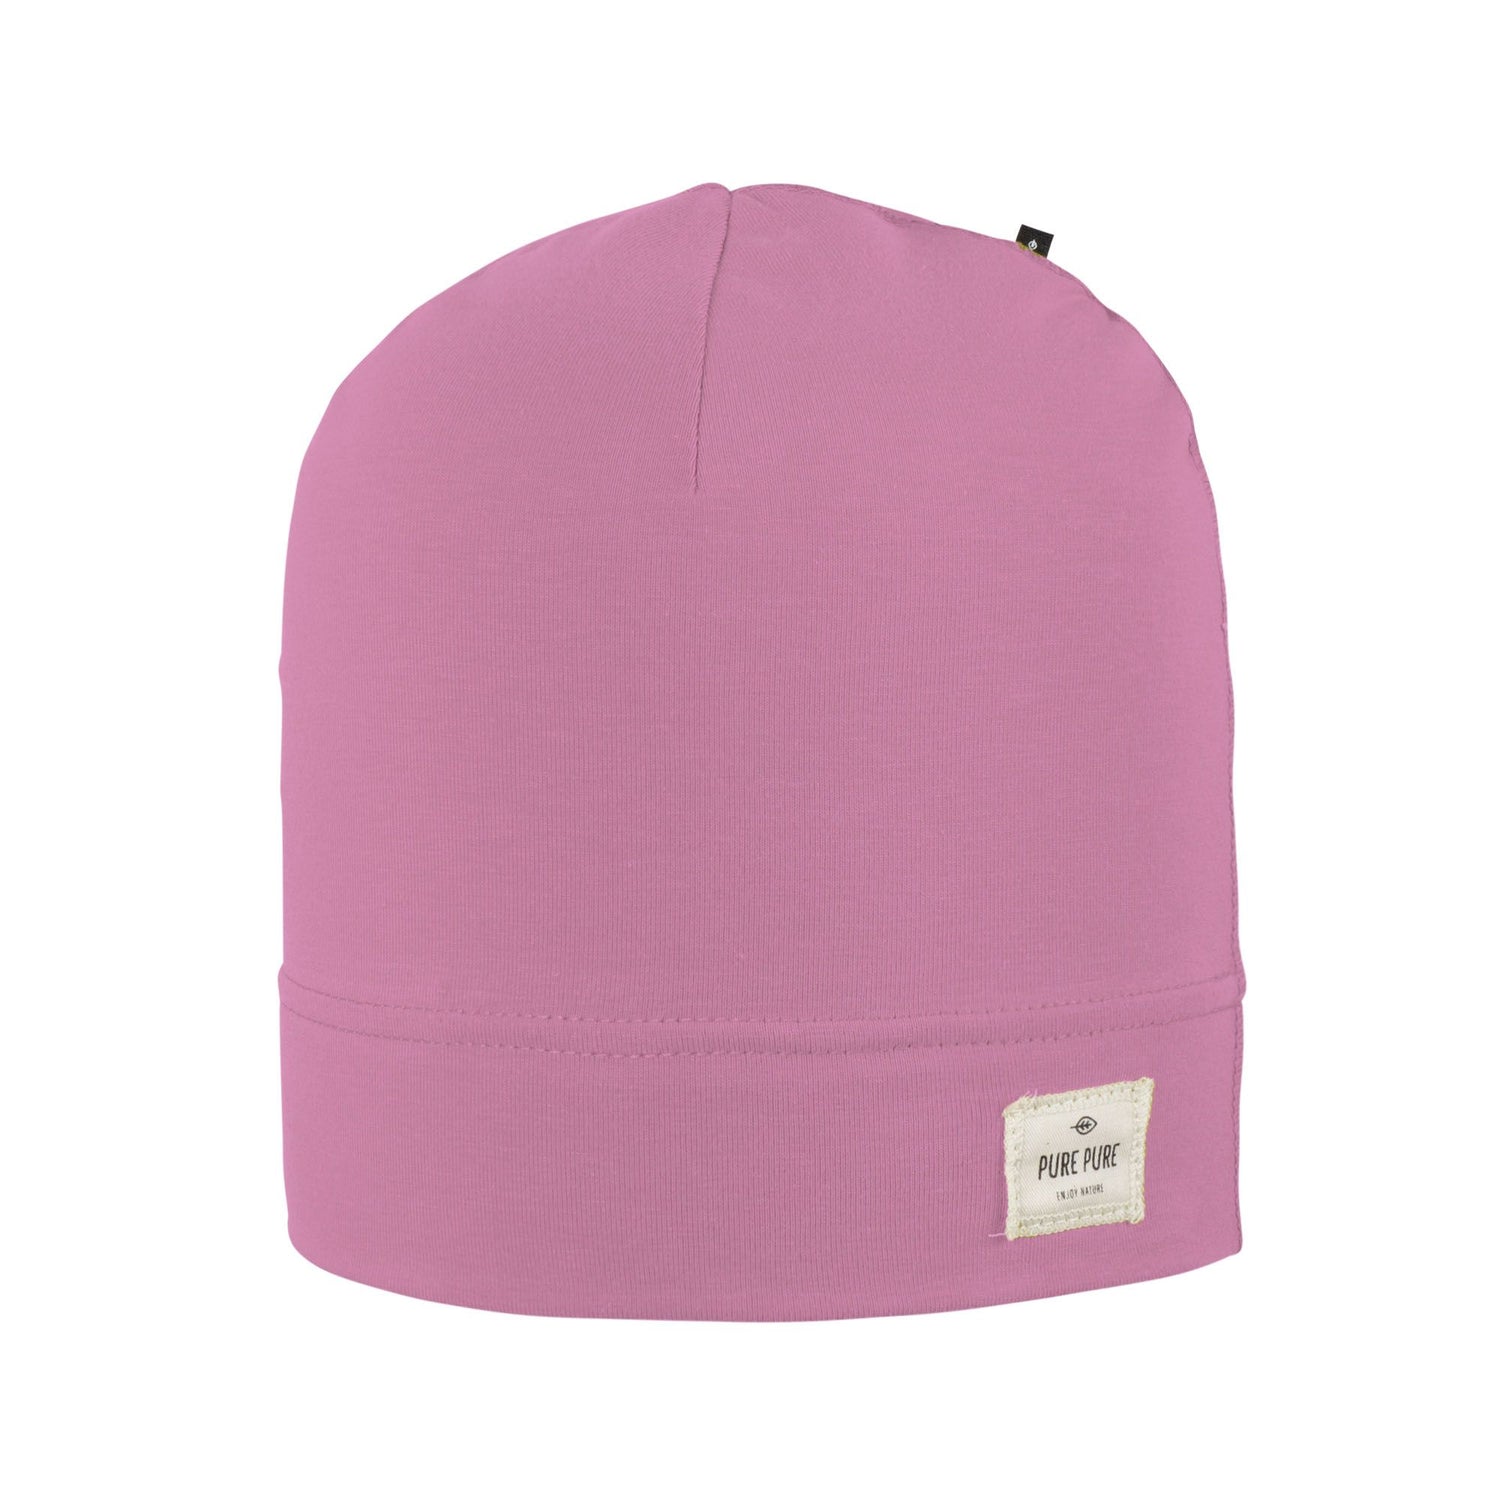 Weiche Beanie Mütze aus Bio-Baumwolle, rosa von Pure Pure für Mädchen und Jungen . 